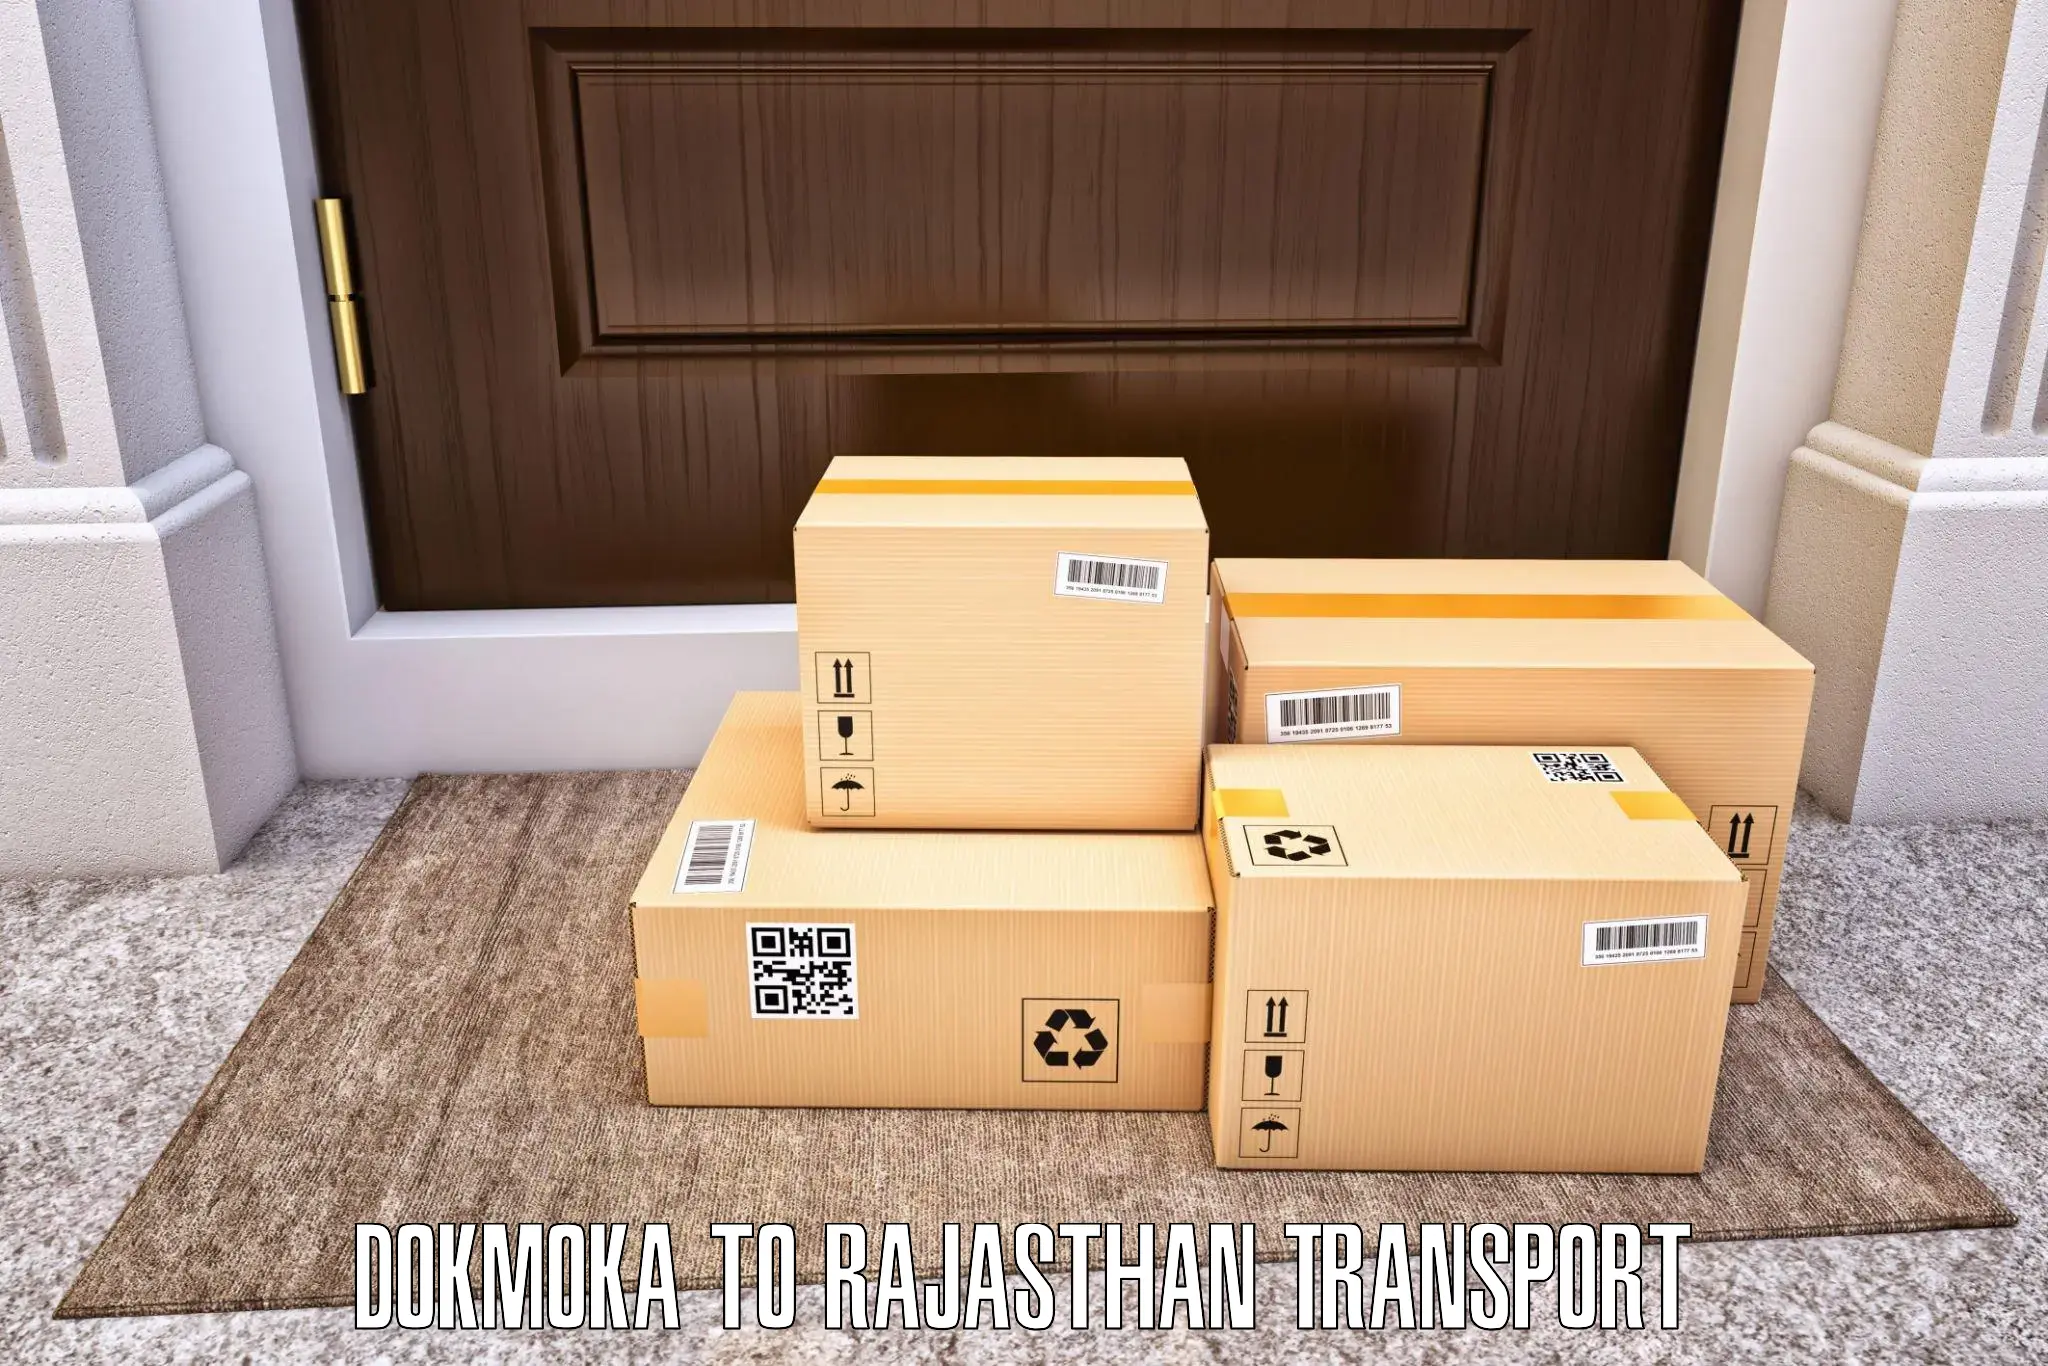 Air cargo transport services Dokmoka to Kota